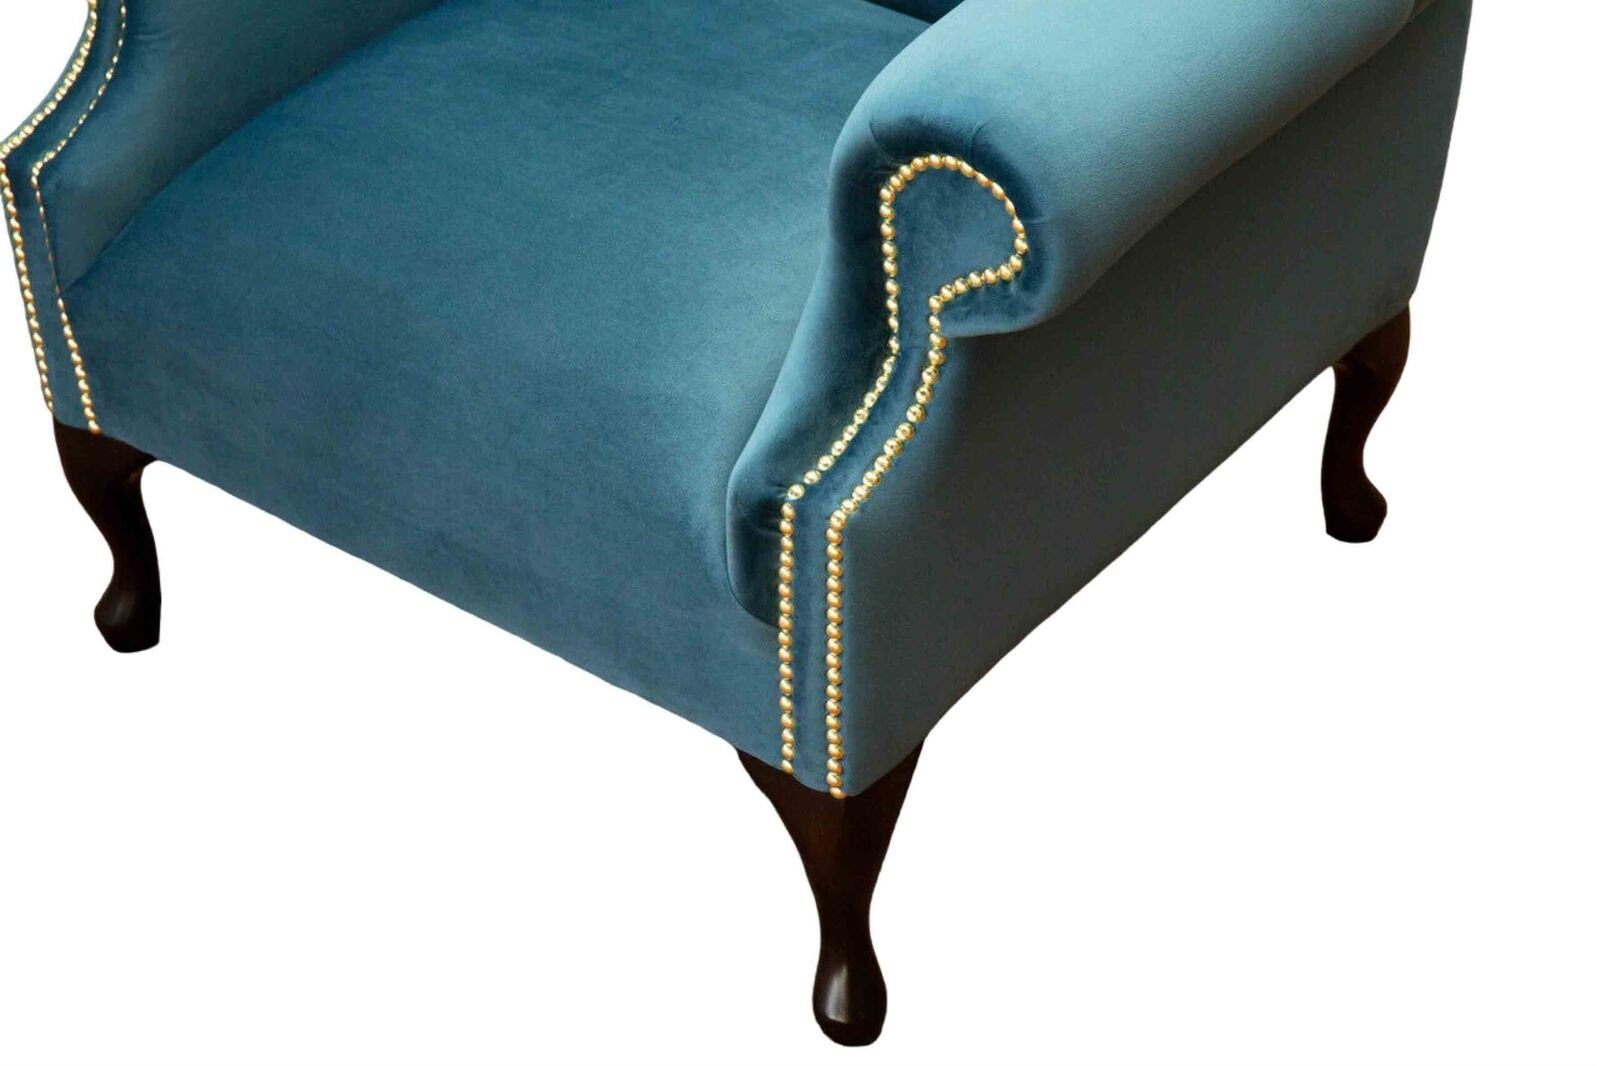 JVmoebel Ohrensessel Ohrensessel Einsitzer Couch Möbel Polster Europe Made Sofa Neu, Chesterfield Blau In